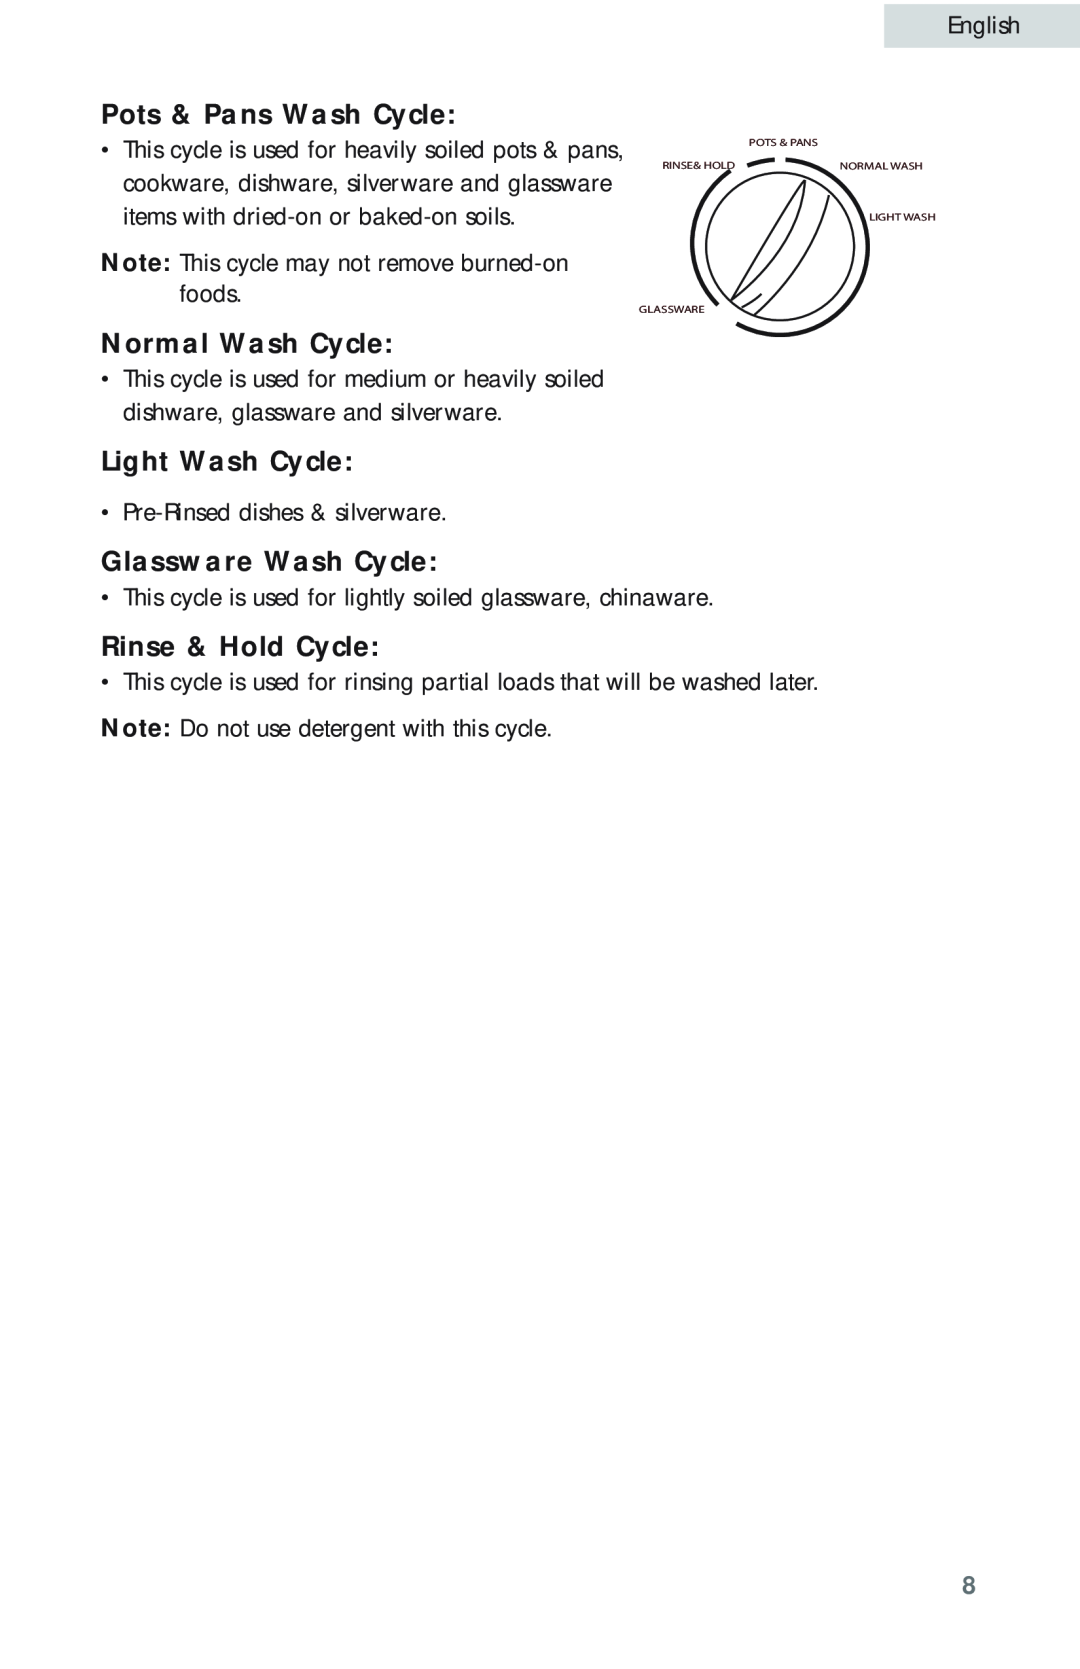 Haier HDB18EB Pots & Pans Wash Cycle, Normal Wash Cycle, Light Wash Cycle, Glassware Wash Cycle, Rinse & Hold Cycle 